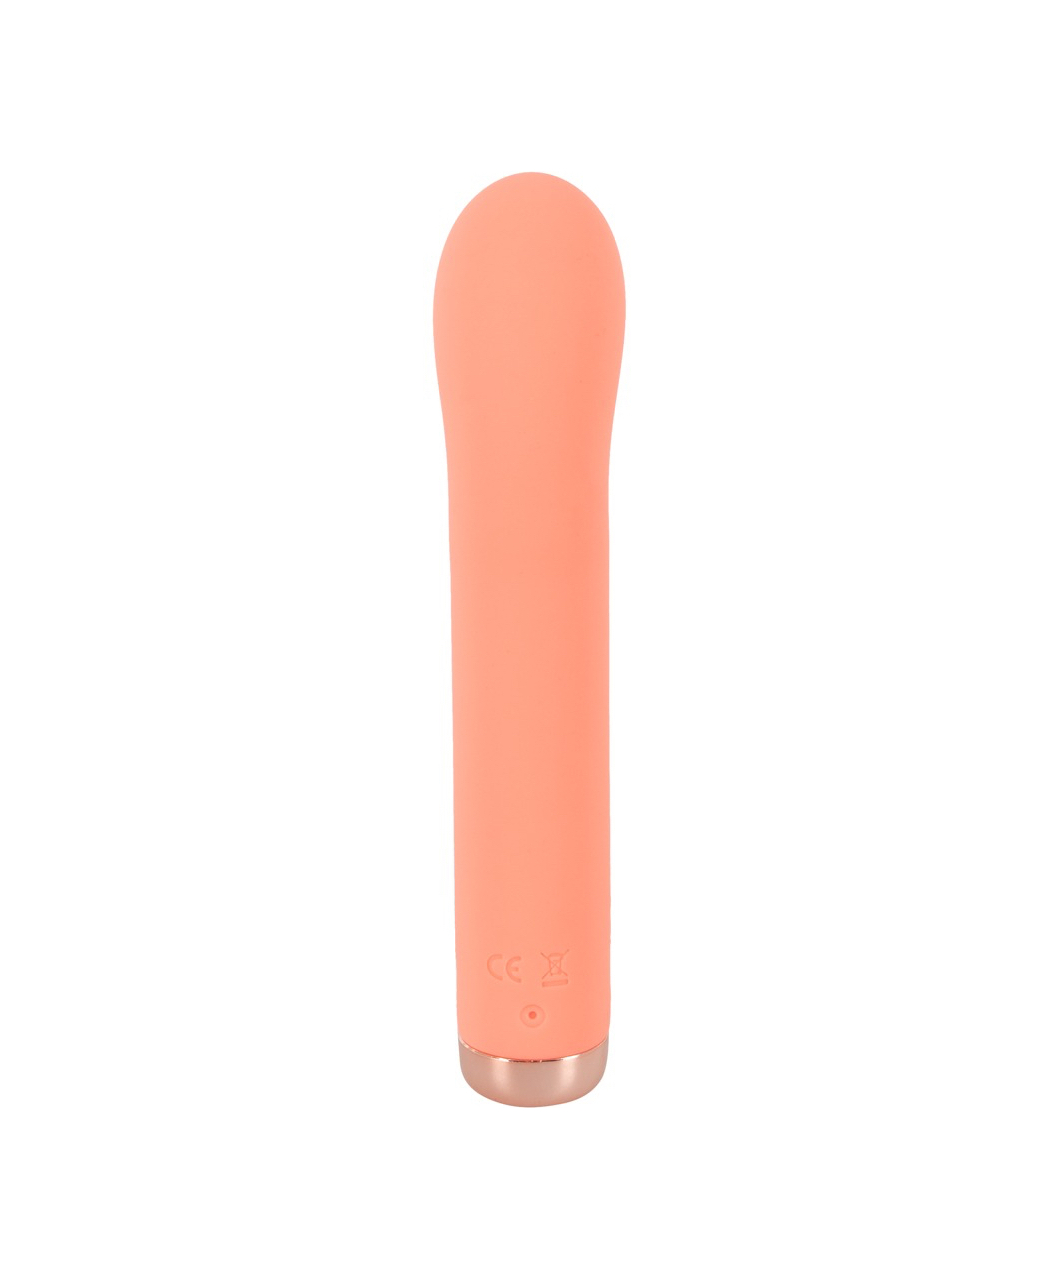 You2Toys O peachy! G-Spot Mini vibrators